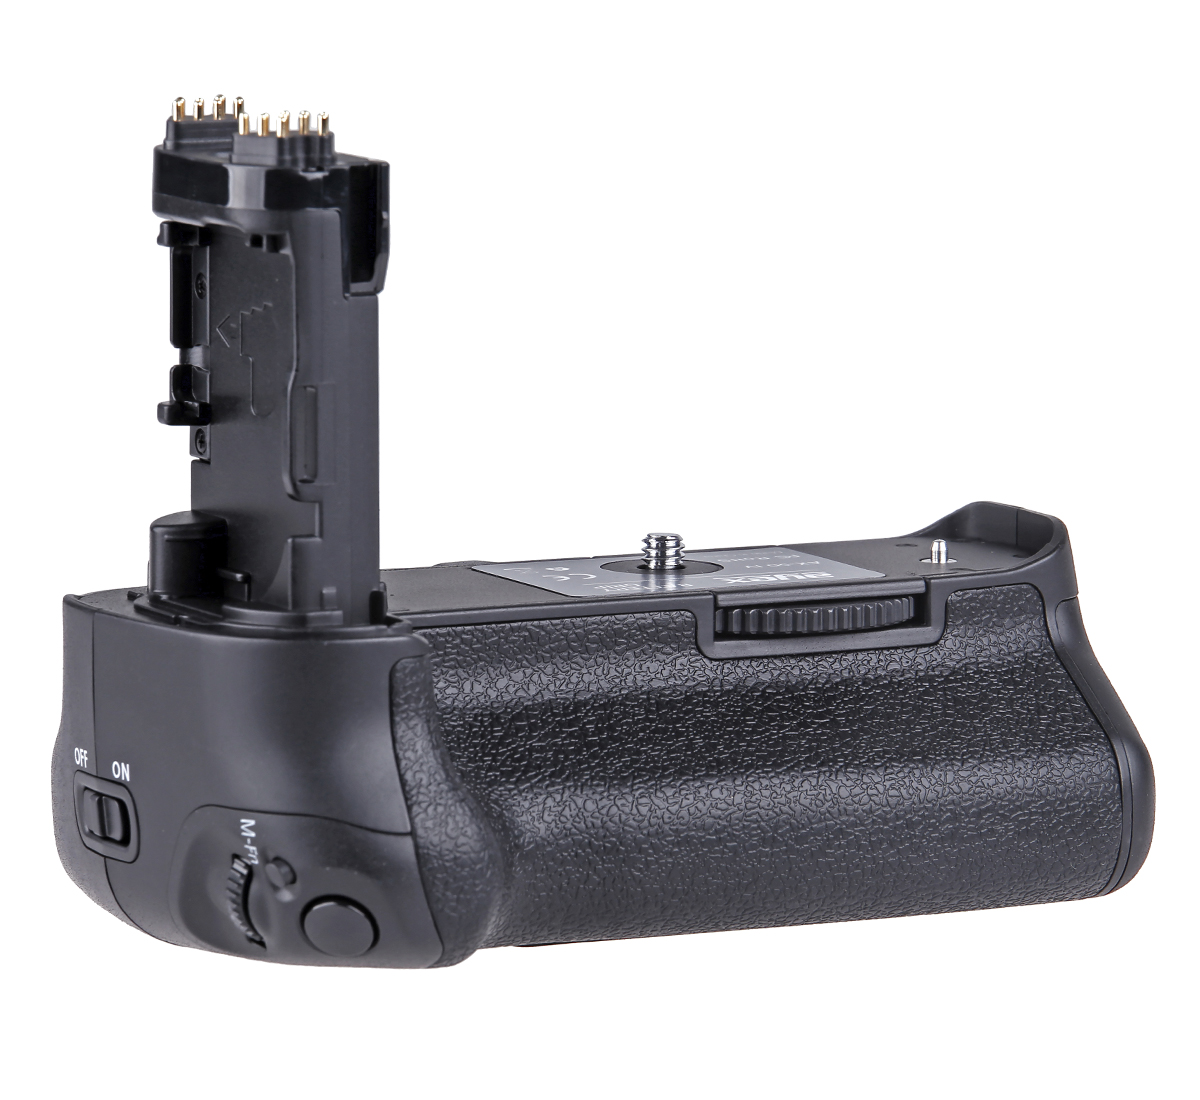 ayex Batteriegriff Set für Canon EOS 5D Mark IV wie BG-E20 + 2x LP-E6N Akku + 1x USB Dual Ladegerät